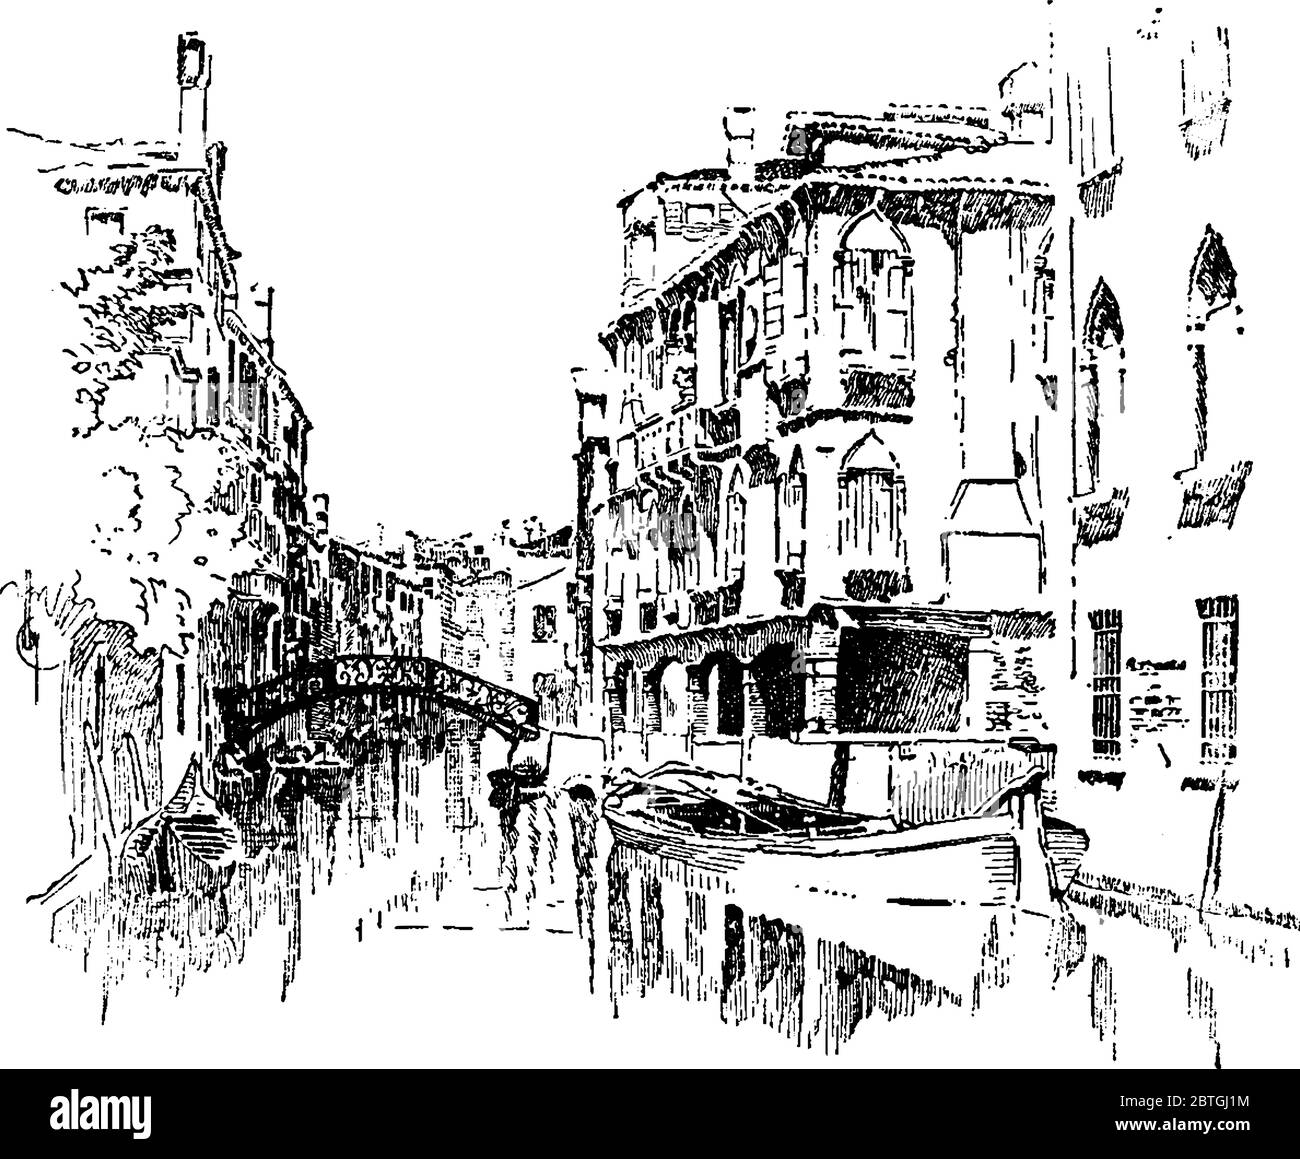 Canal à Venise entouré de bâtiments, Italie, dessin de ligne d'époque ou illustration de gravure. Illustration de Vecteur